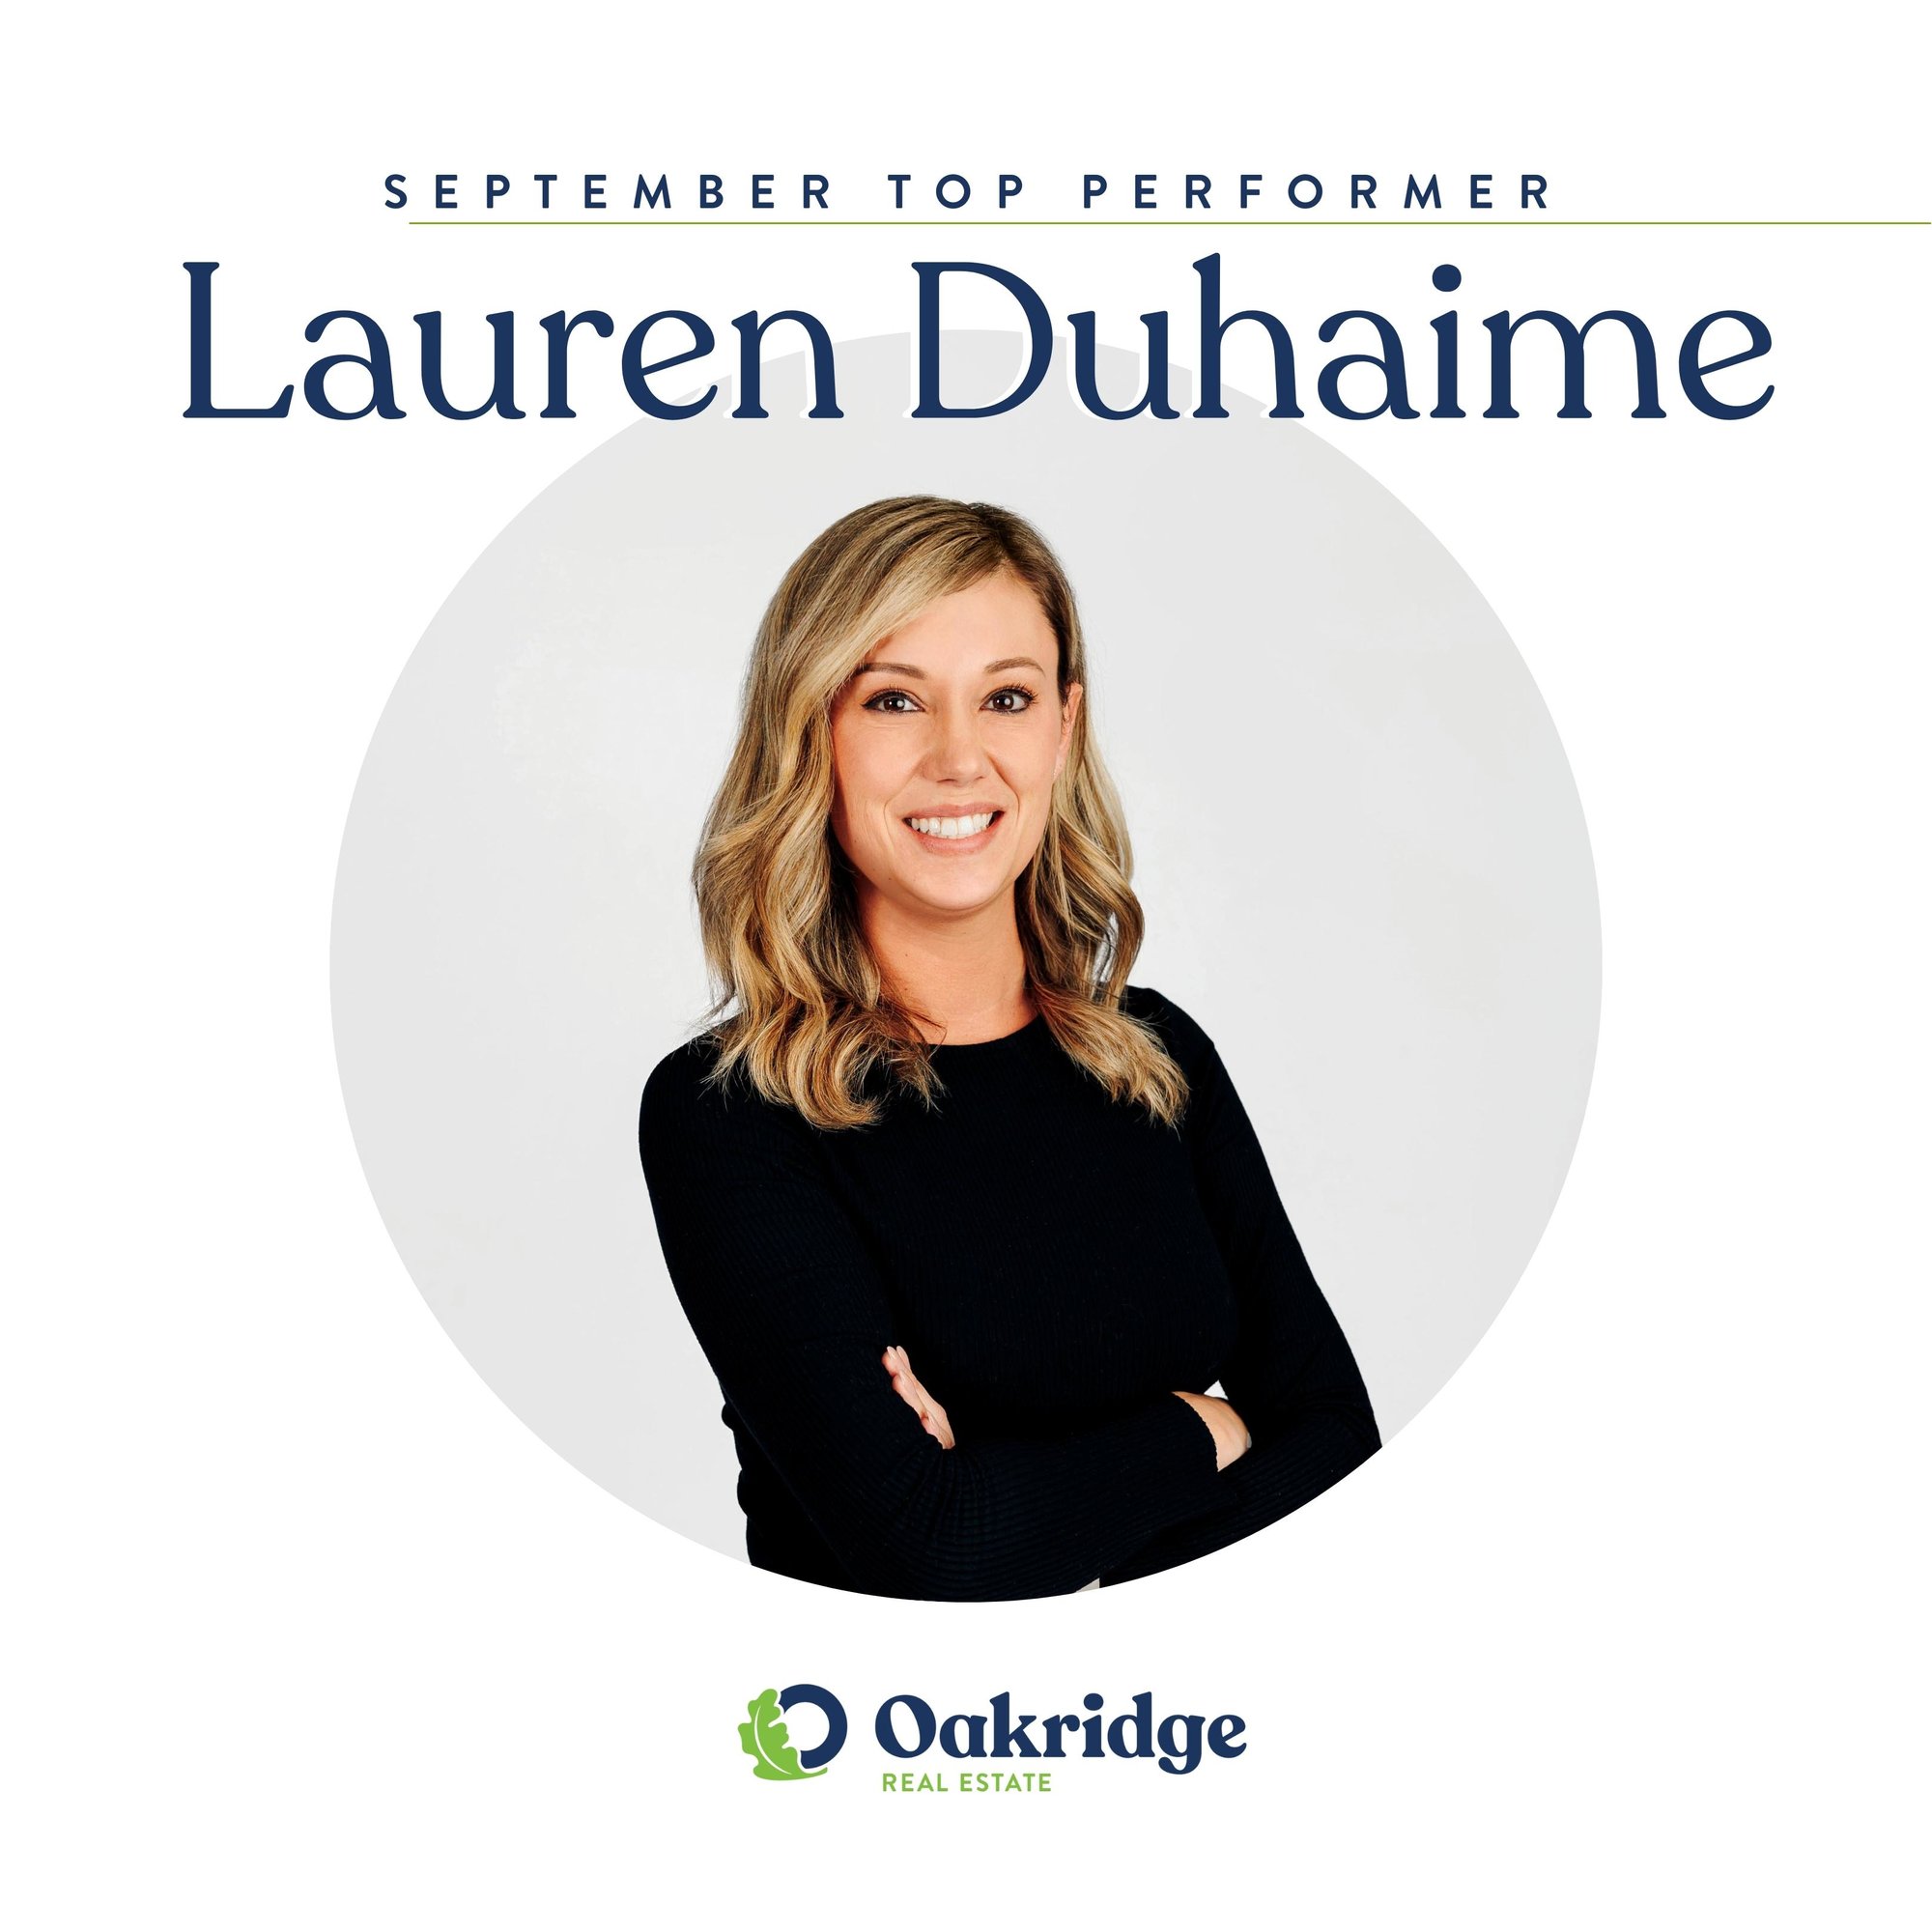 Lauren Duhaime September Top Performer | Oakridge Real Estate